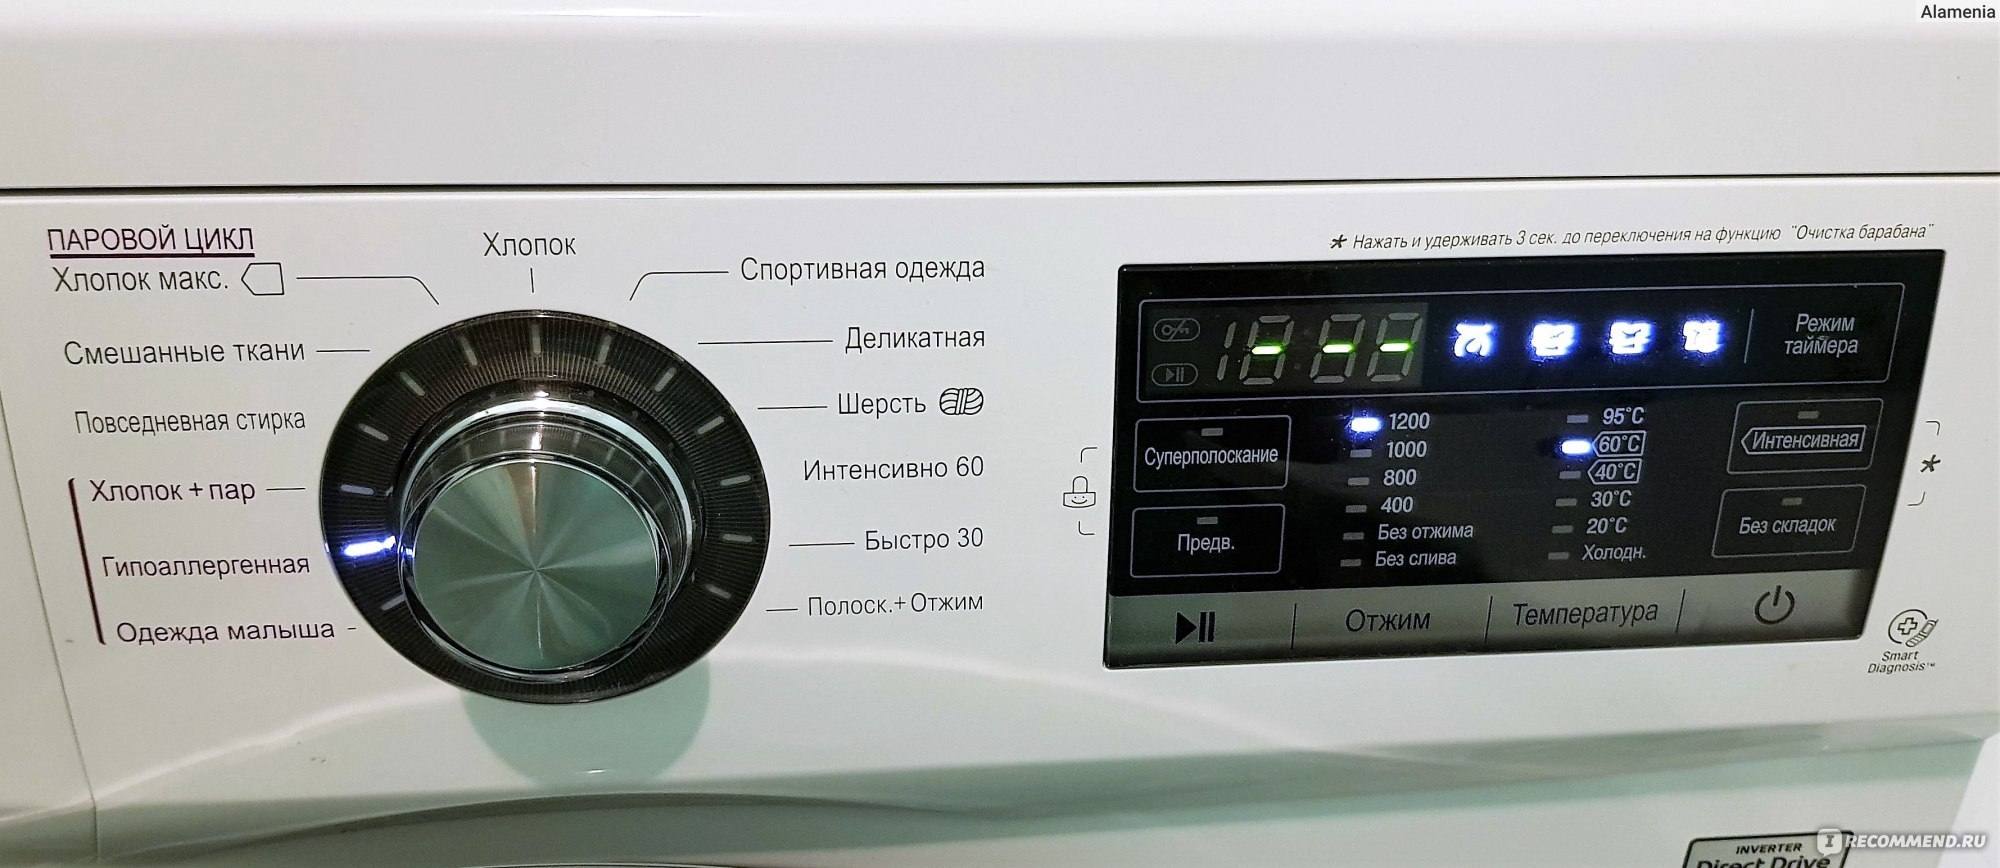 что такое функция steam в стиральной машине фото 44